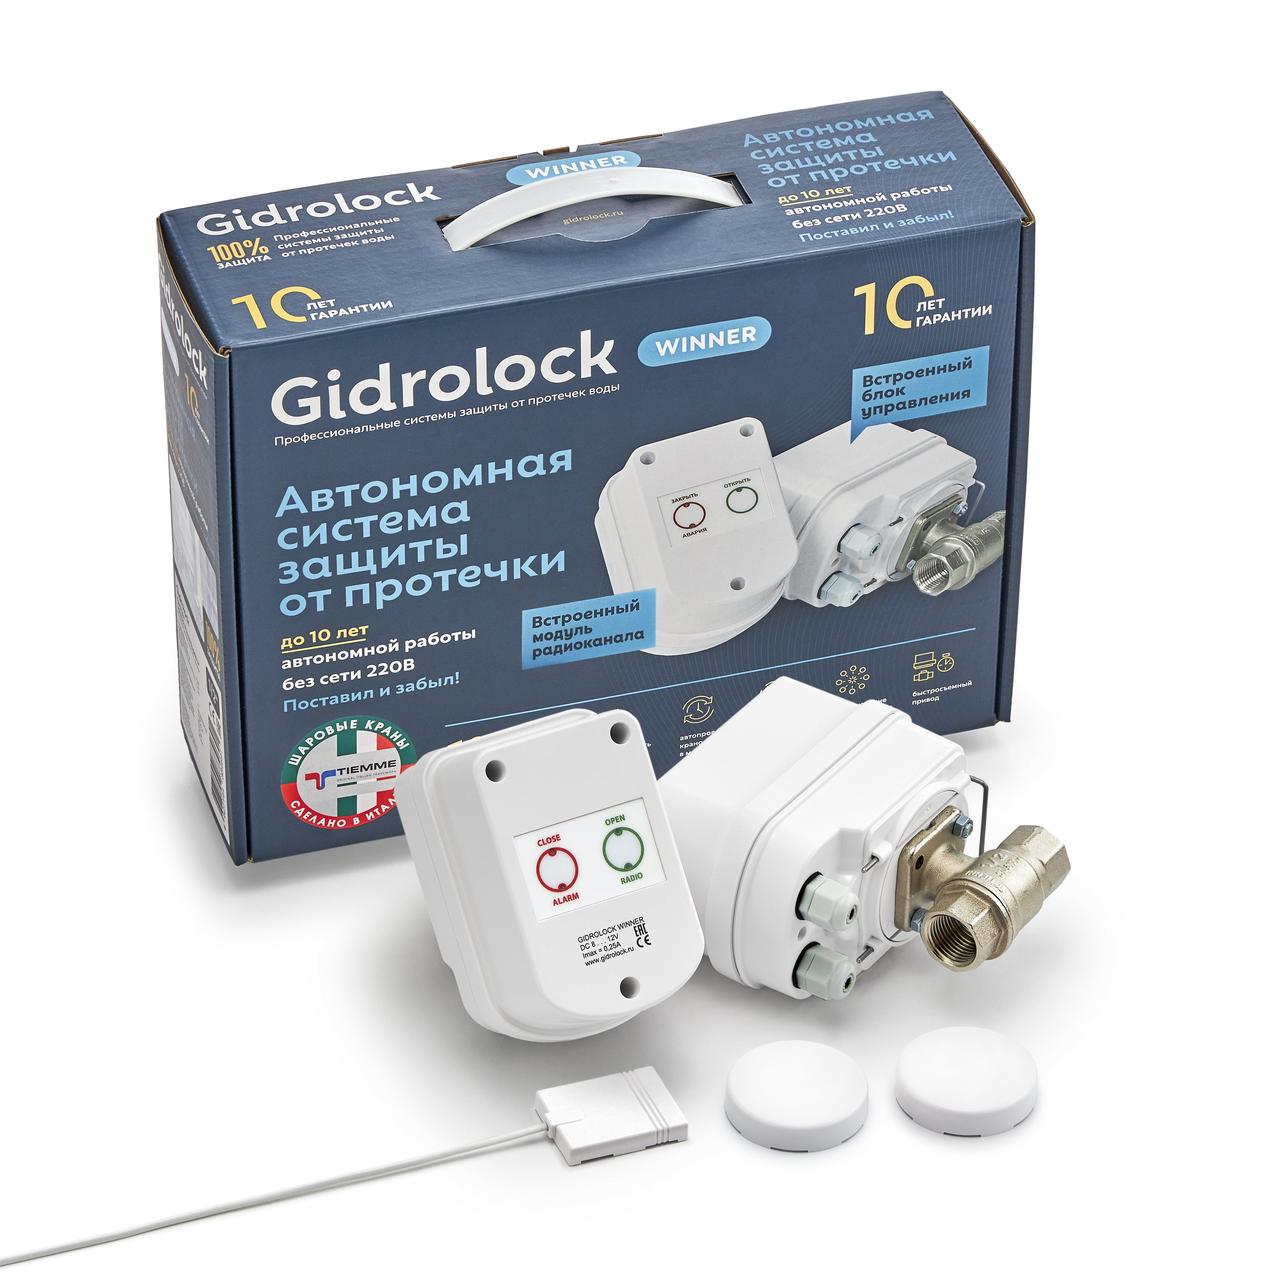 Система защиты от протечек Gidrolock Winner Radio Tiemme 3/4", от батареек